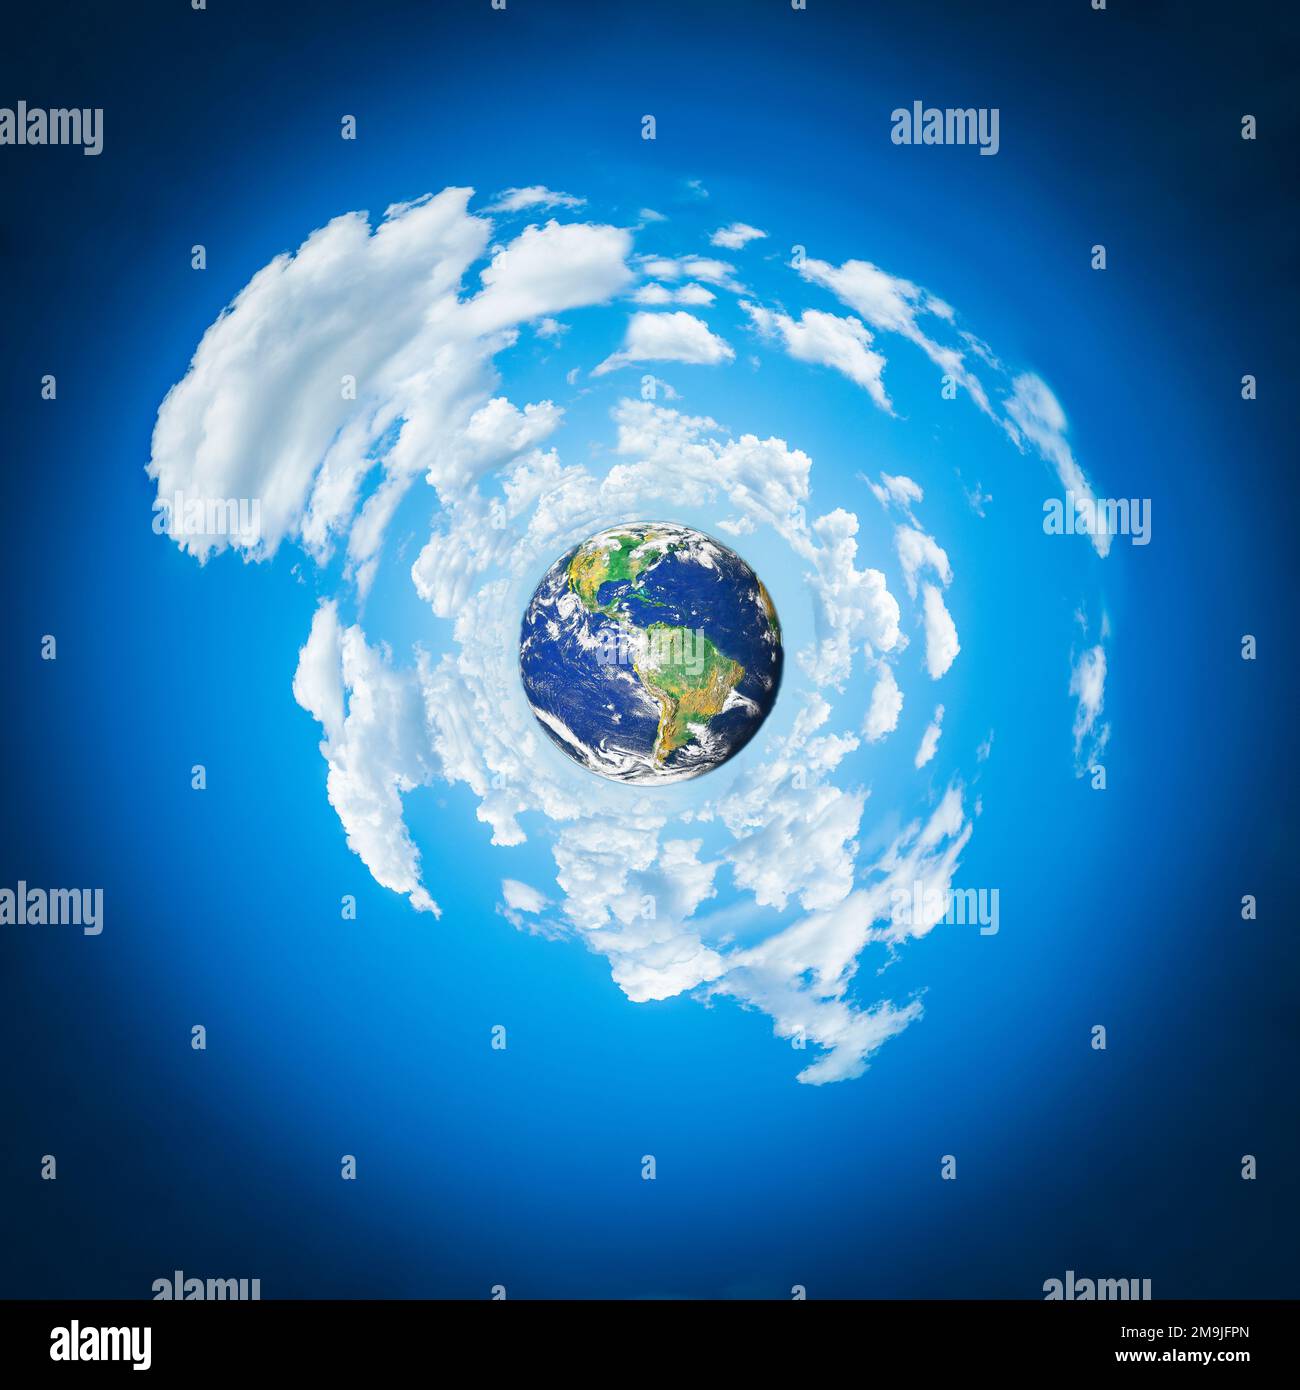 Immagine astratta sferica del pianeta terra e delle nuvole Foto Stock